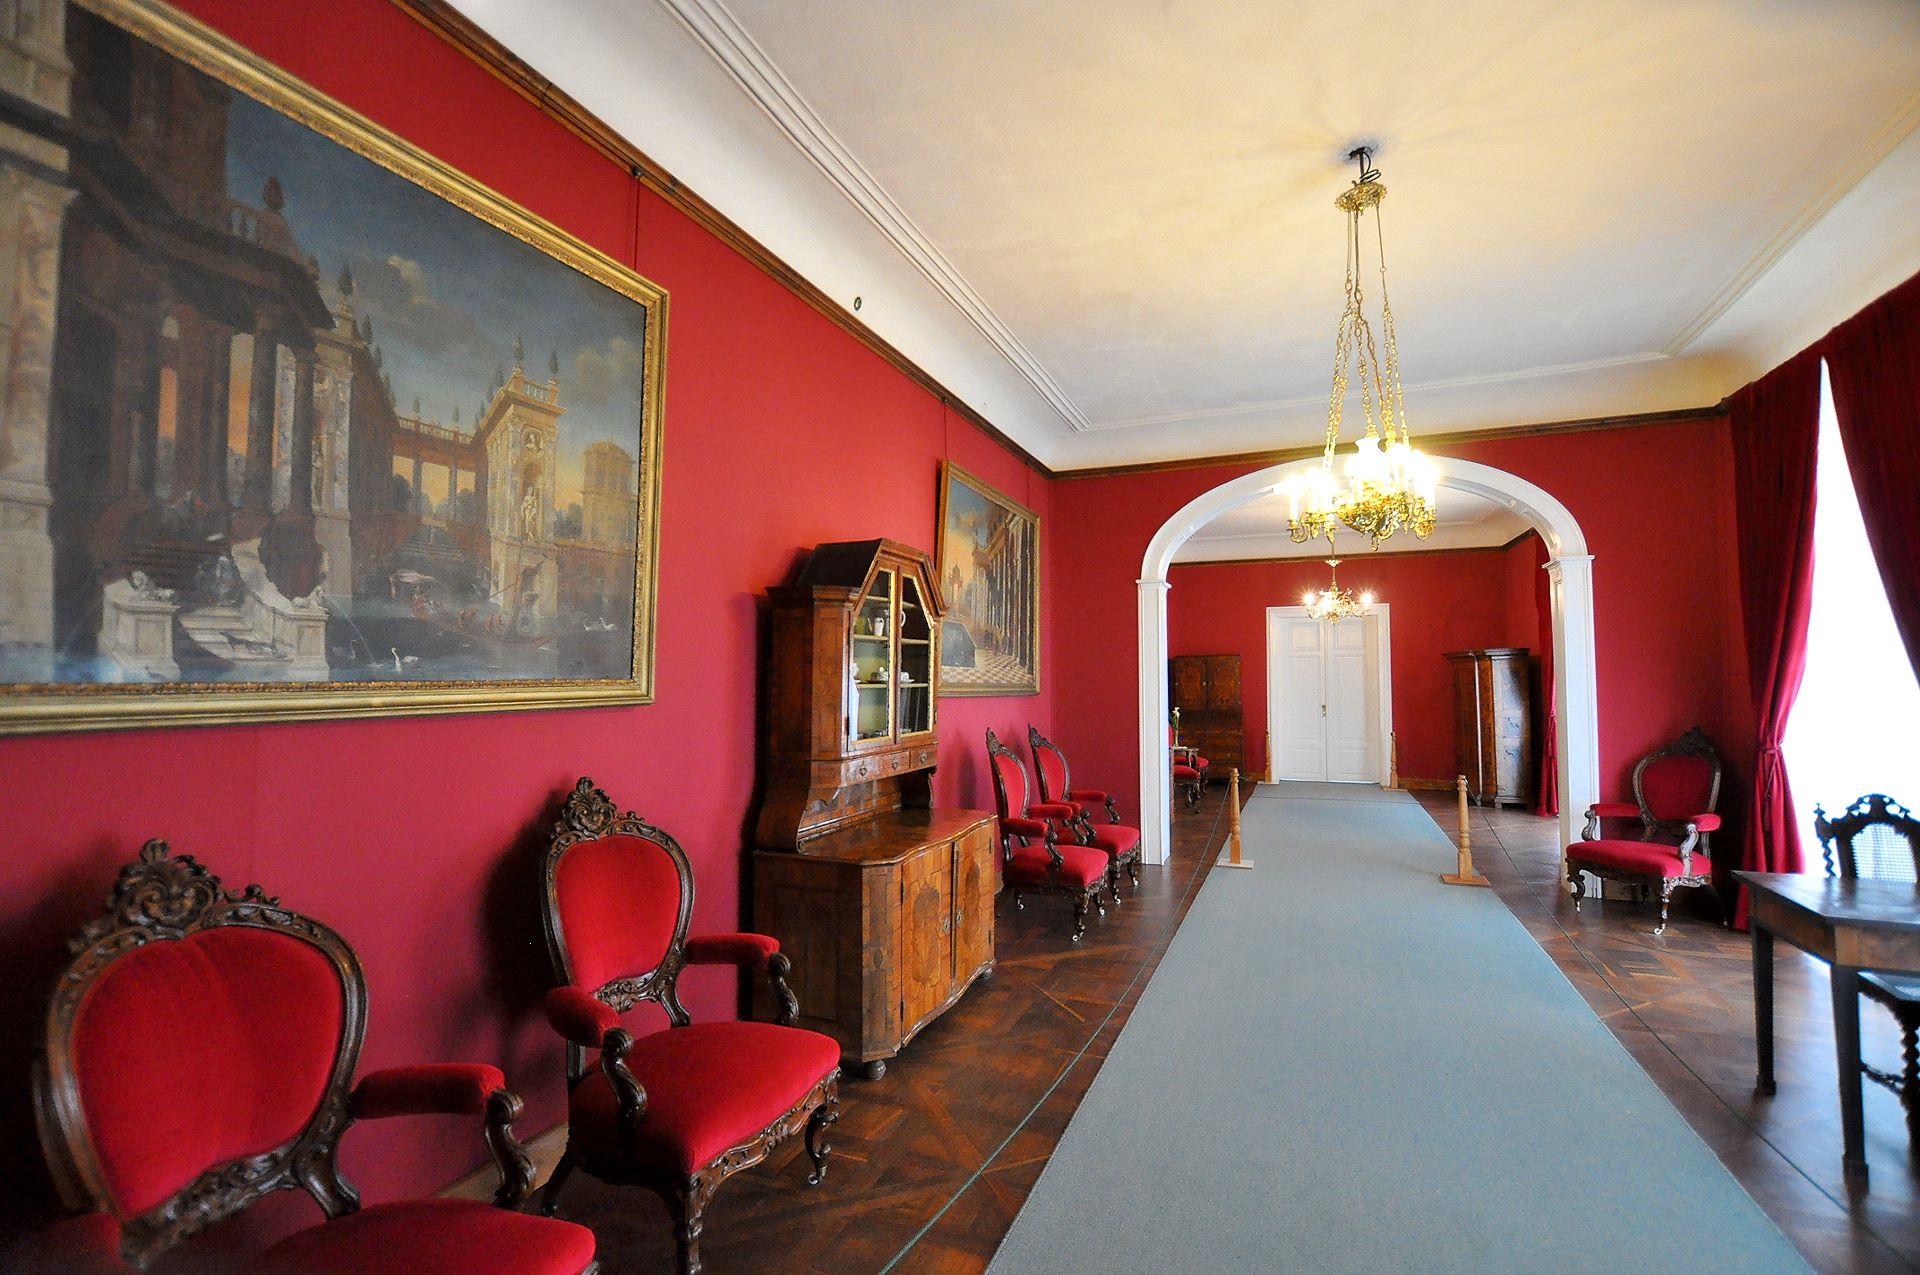 Rundgang durch die Wohnräume der Burg Veveří, schön restaurierter Saal